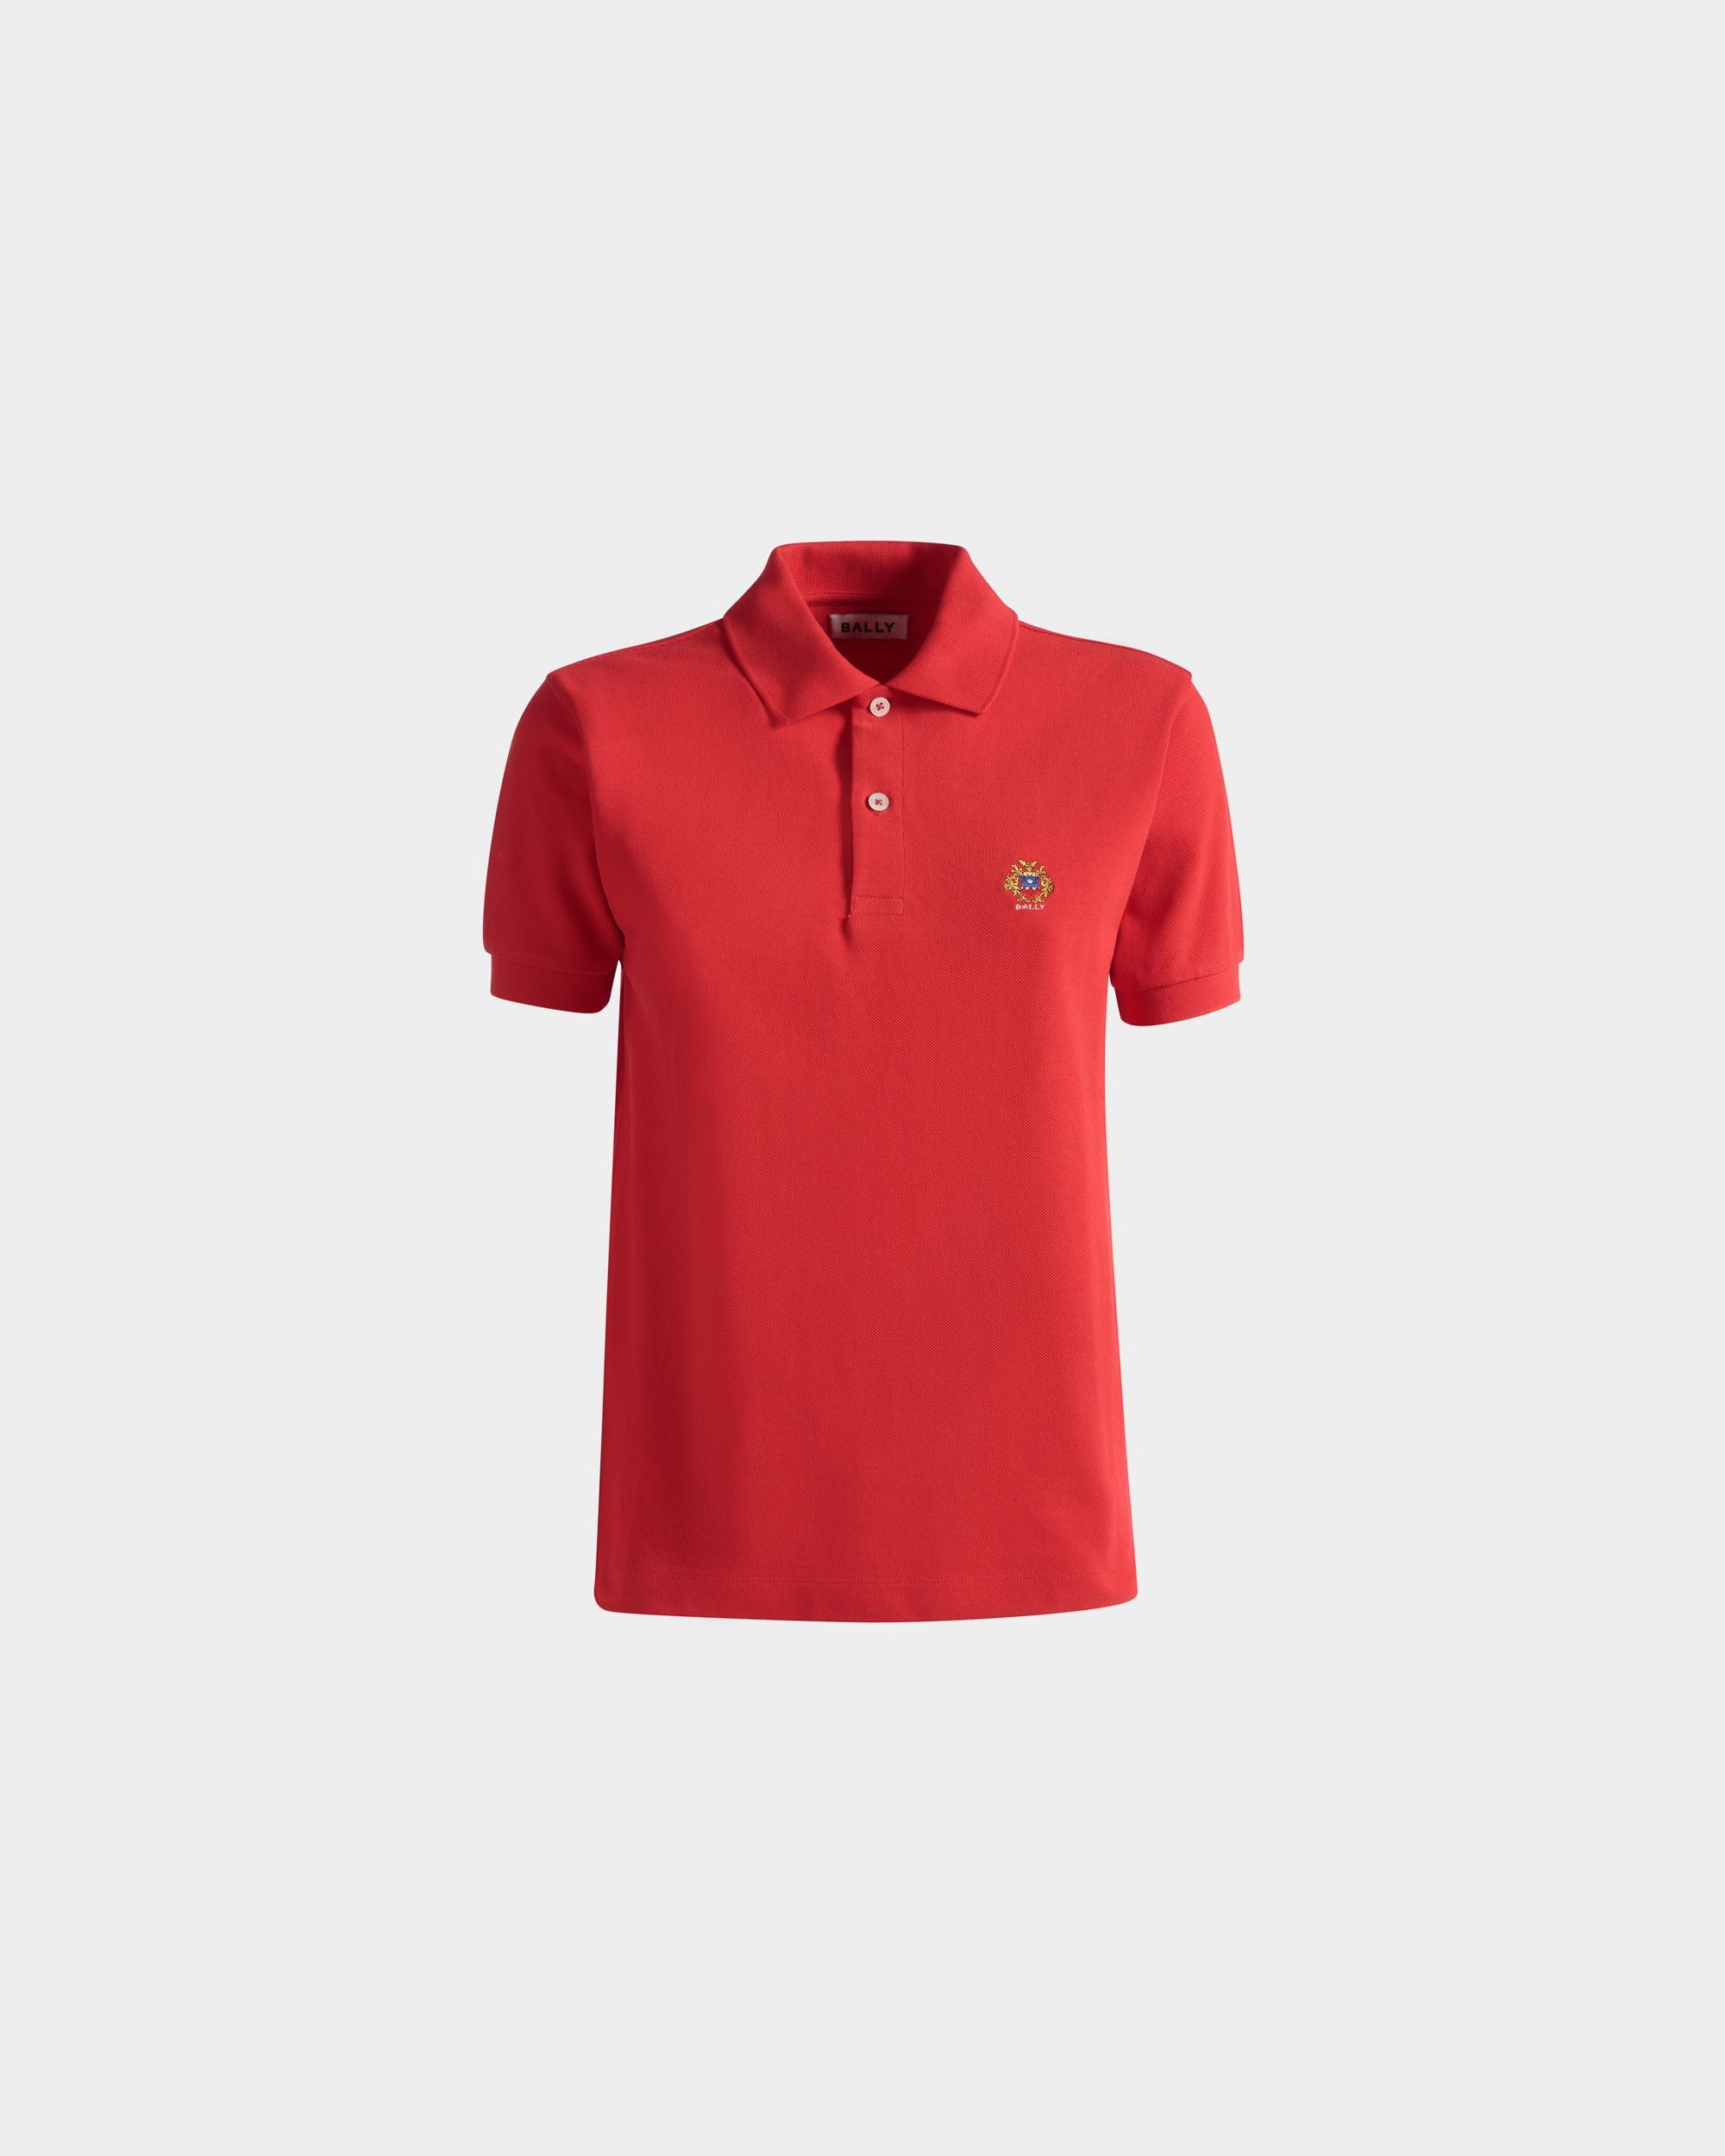 Poloshirt mit kurzen Ärmeln für Damen aus roter Baumwolle | Bally | Still Life Vorderseite